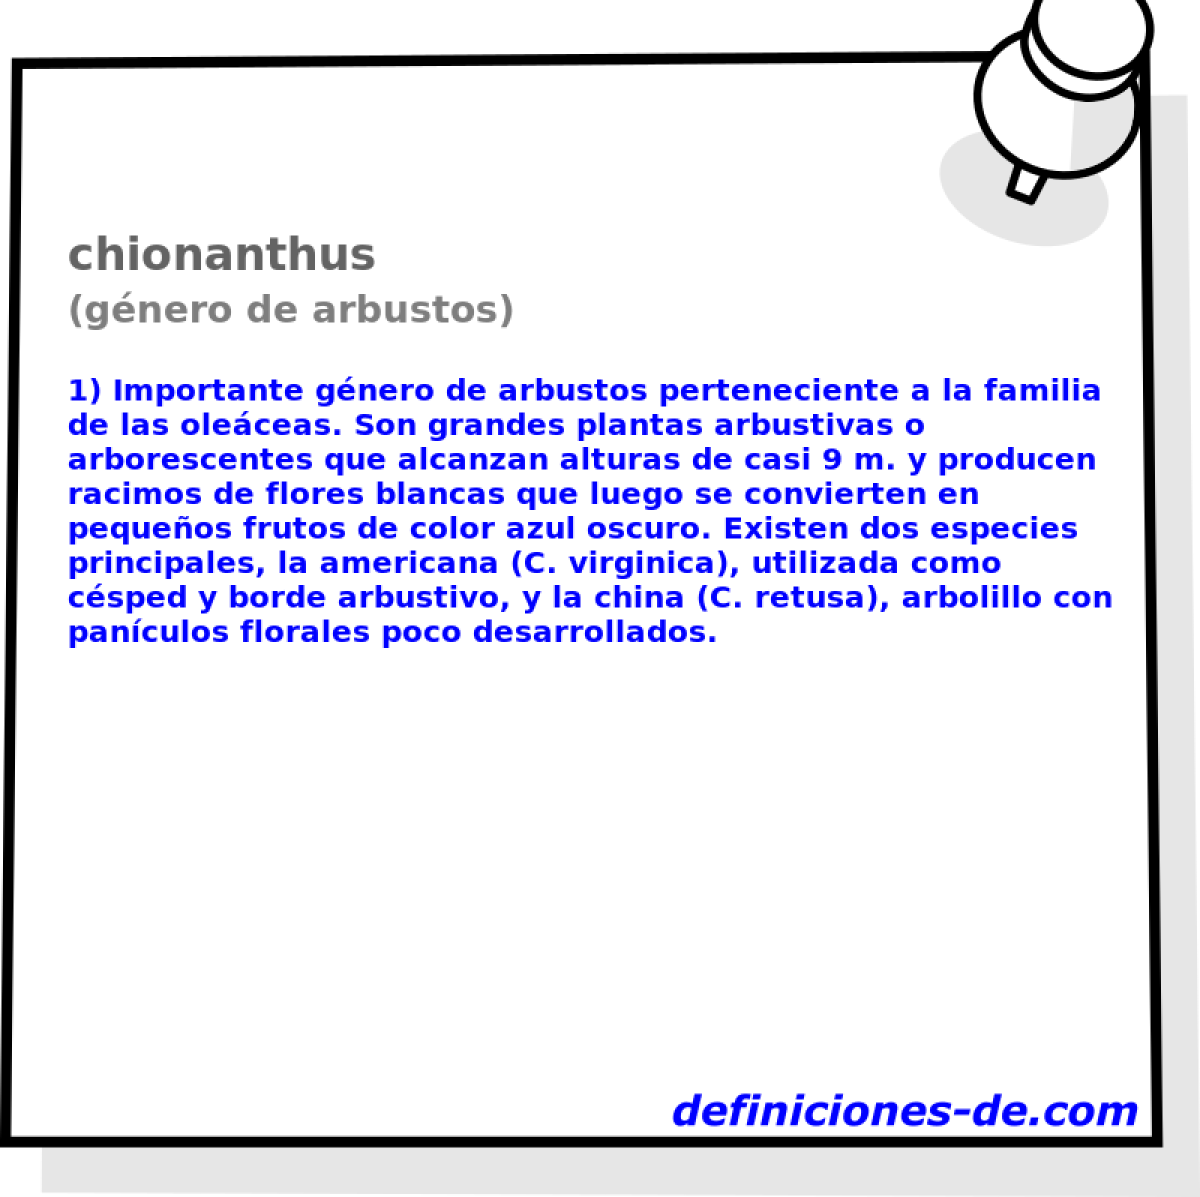 chionanthus (gnero de arbustos)